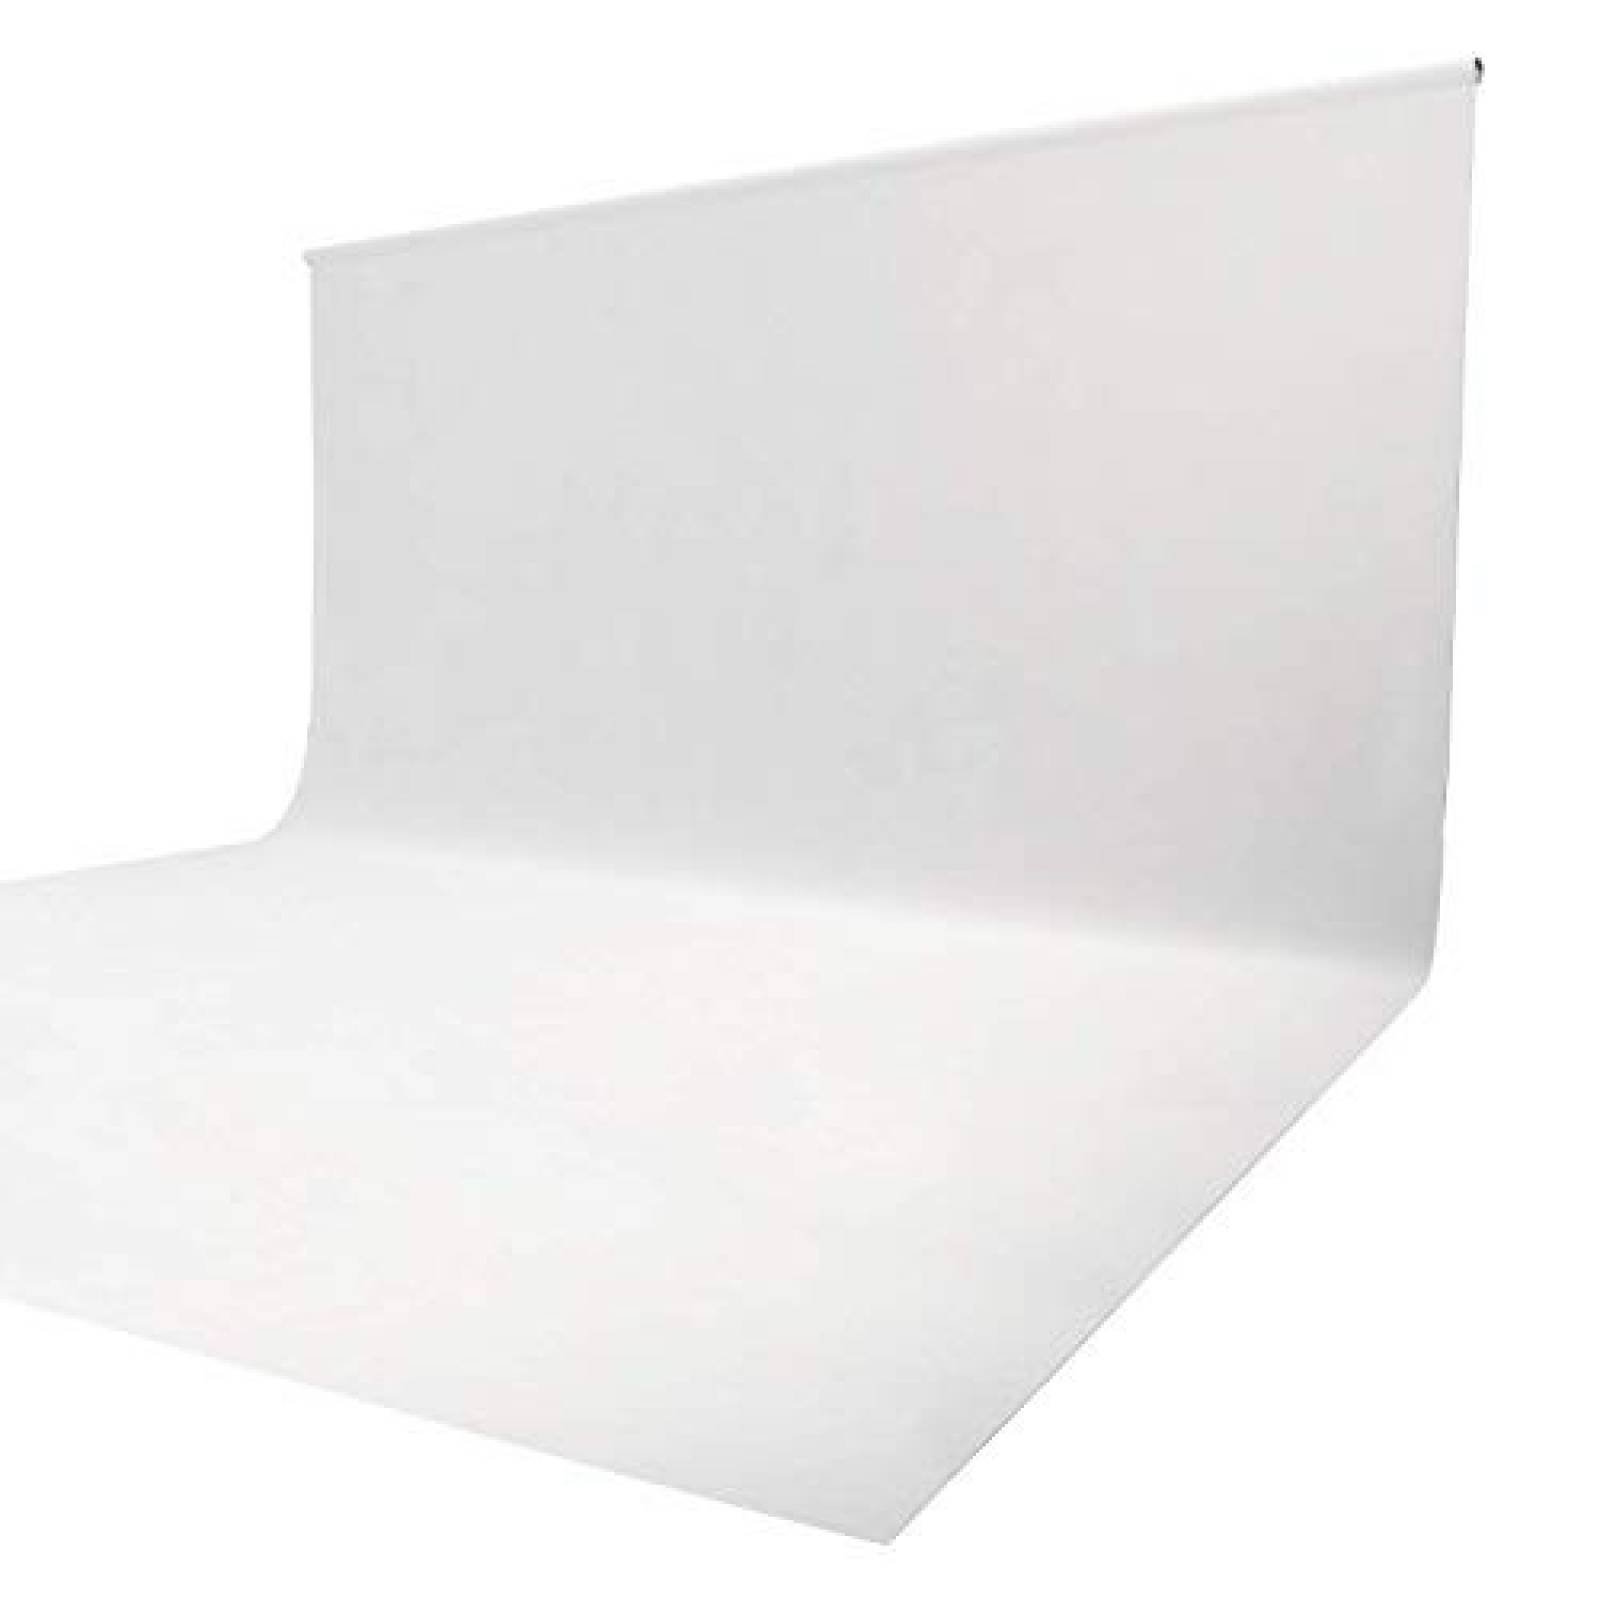 Fondo para fotografía ISSUNTEX 150x210cm lavable -Blanco